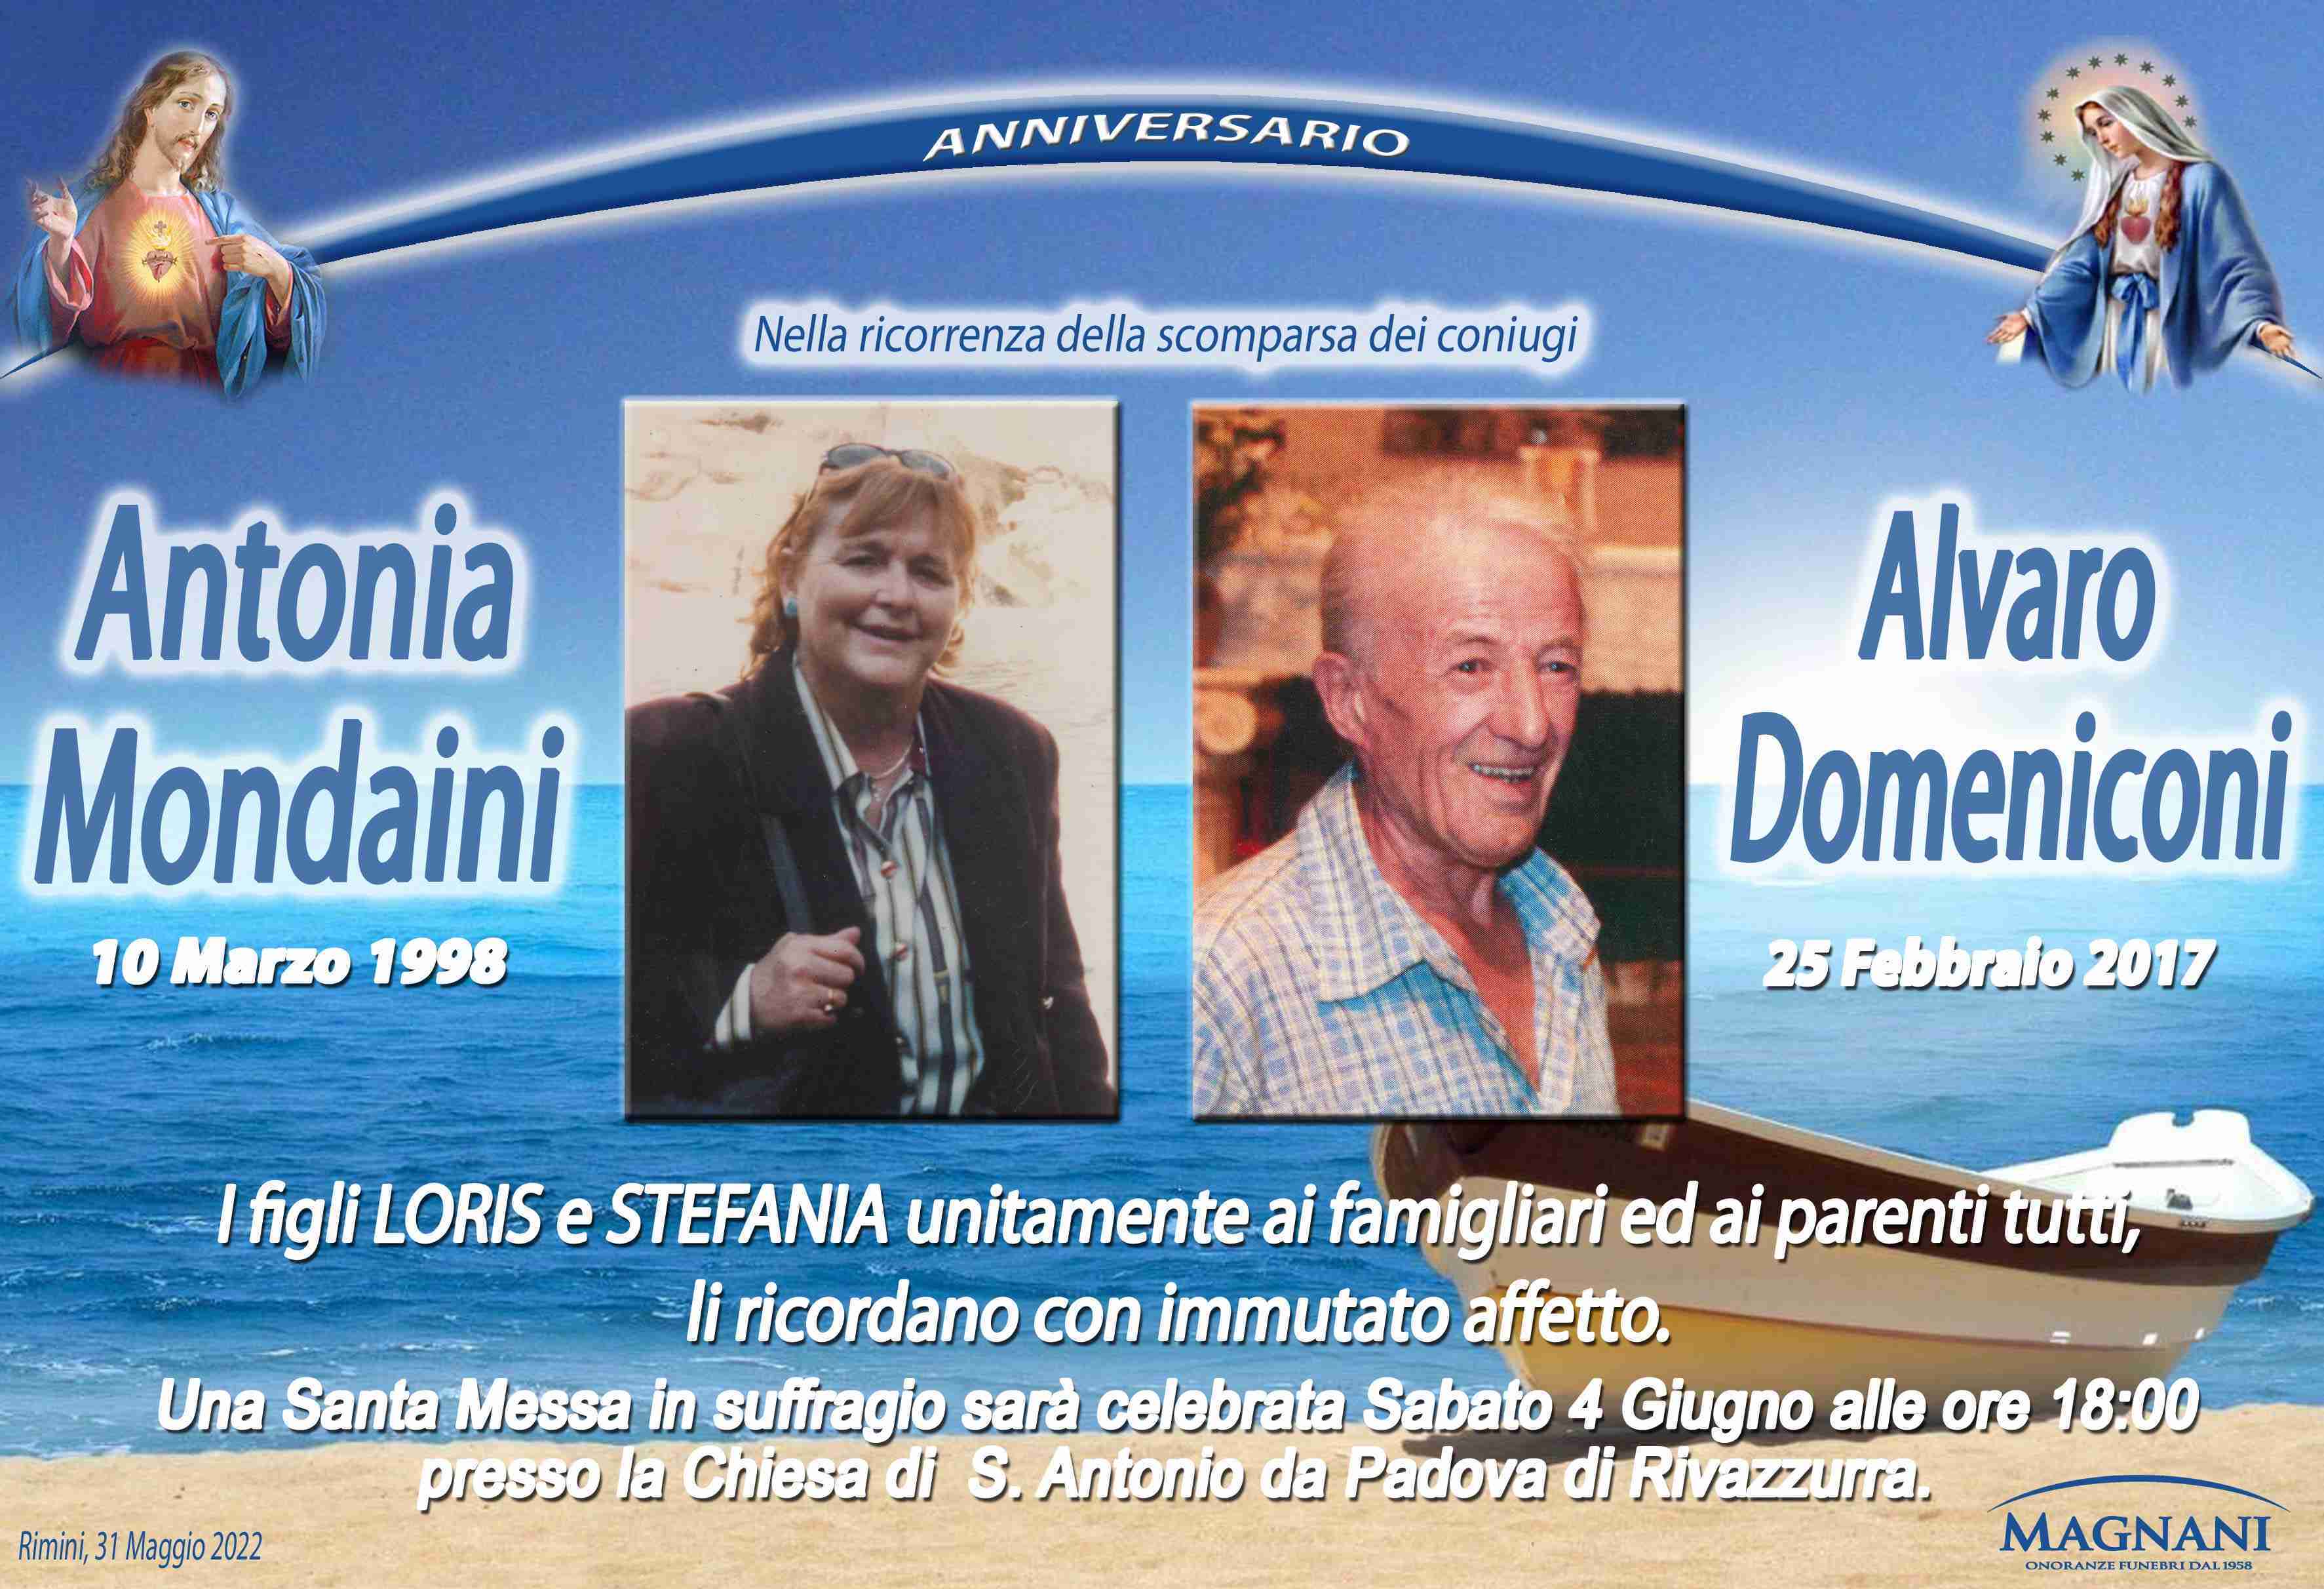 Antonia Mondaini e Alvaro Domeniconi